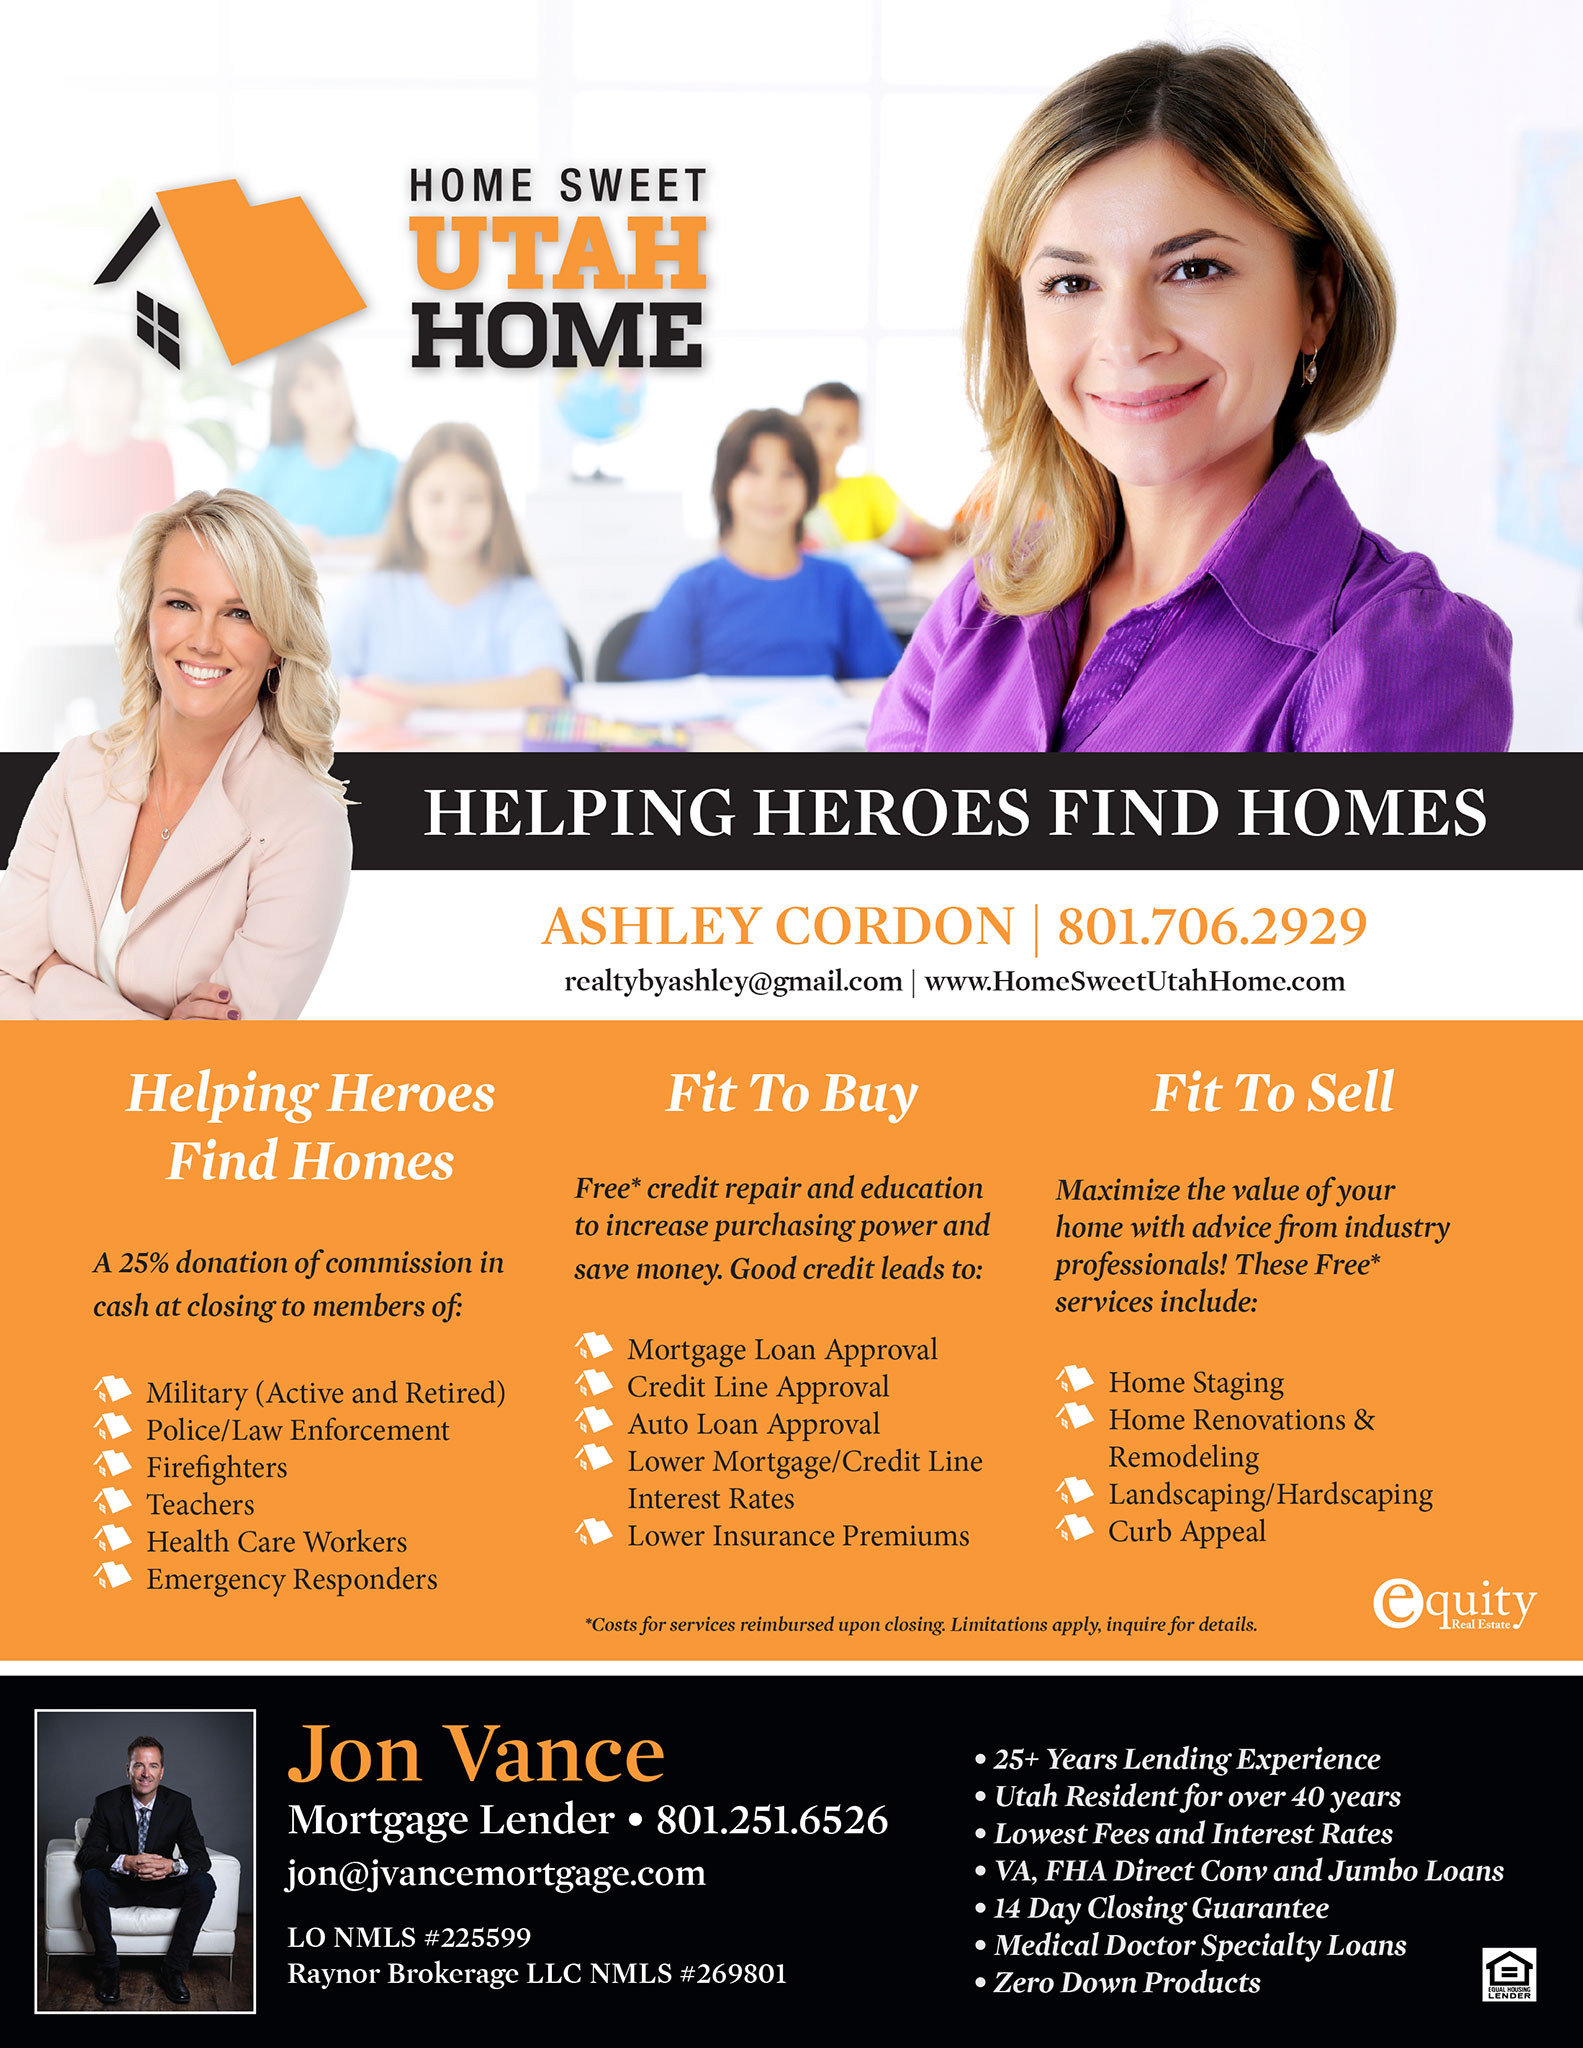 Home Sweet Utah Home | Helping Heroes Find Homes